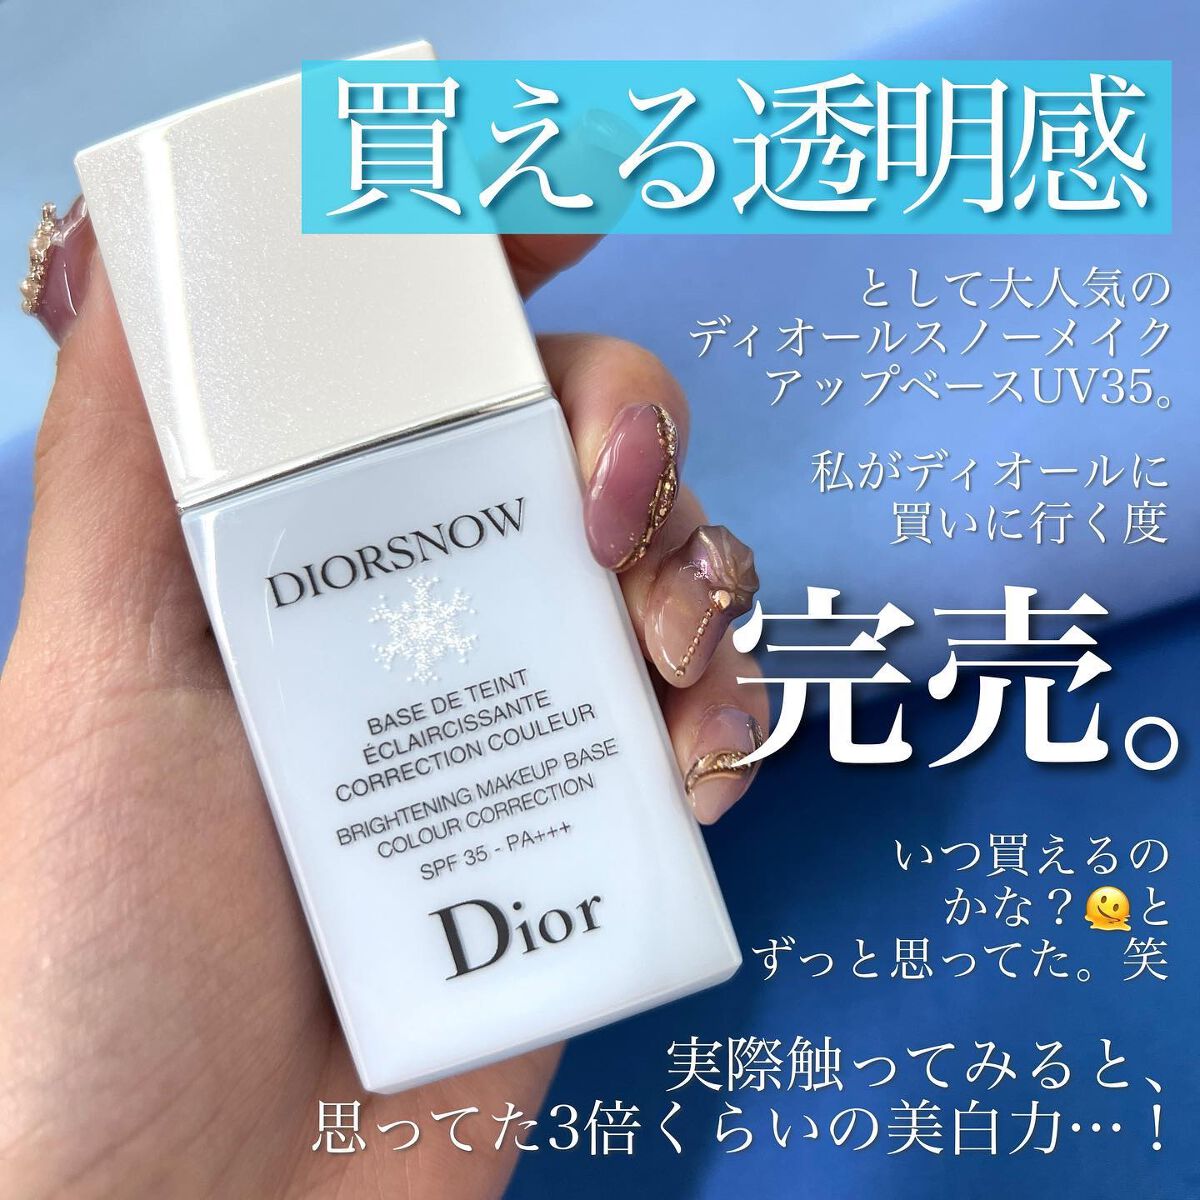 Dior スノーメイクアップベース UV35 ブルー